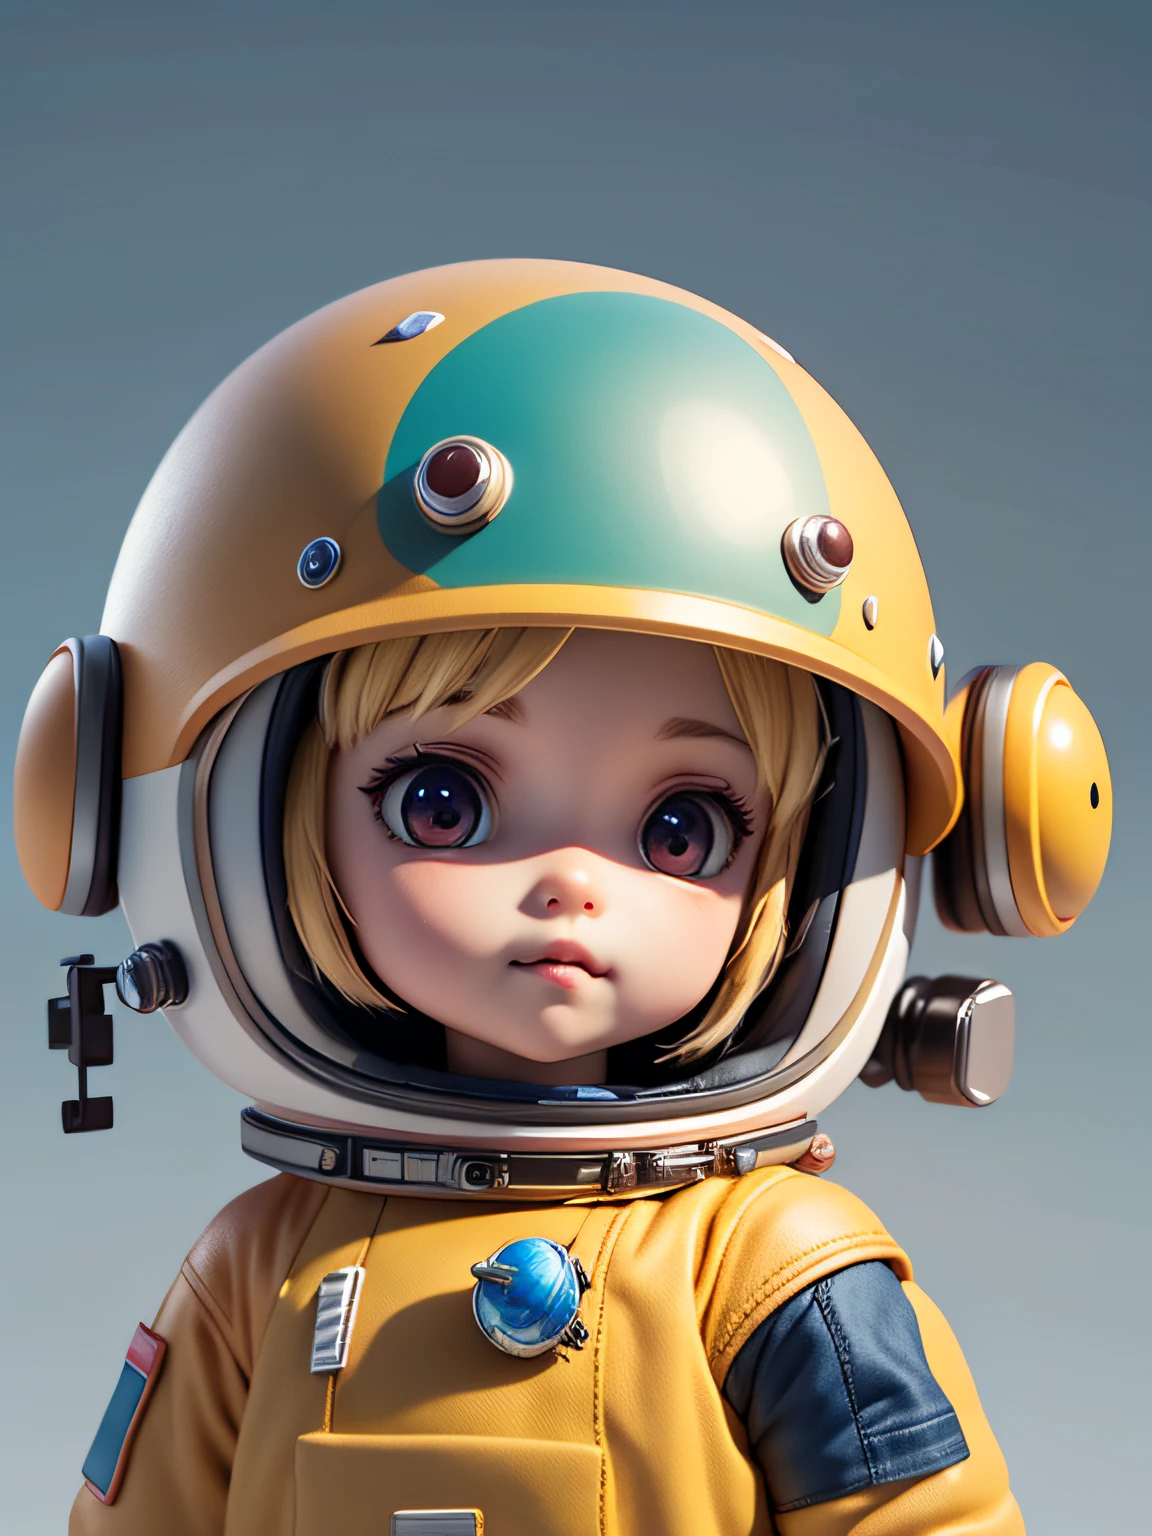 Es gibt eine kleine Puppe mit Helm und Helm, süßes 3D-Rendering, kleiner Astronaut schaut nach oben, Porträt Anime Weltraum Kadett Junge, süßes 3D-Rendering eines Anime-Jungen, süße detaillierte digitale Kunst, männlicher Entdecker Mini süßer Junge, 3D-Rendering stilisiert, 3D gerenderte Charakterkunst 8k, süße digitale Malerei, 3D im Anime-Stil, super detailliertes Rendering